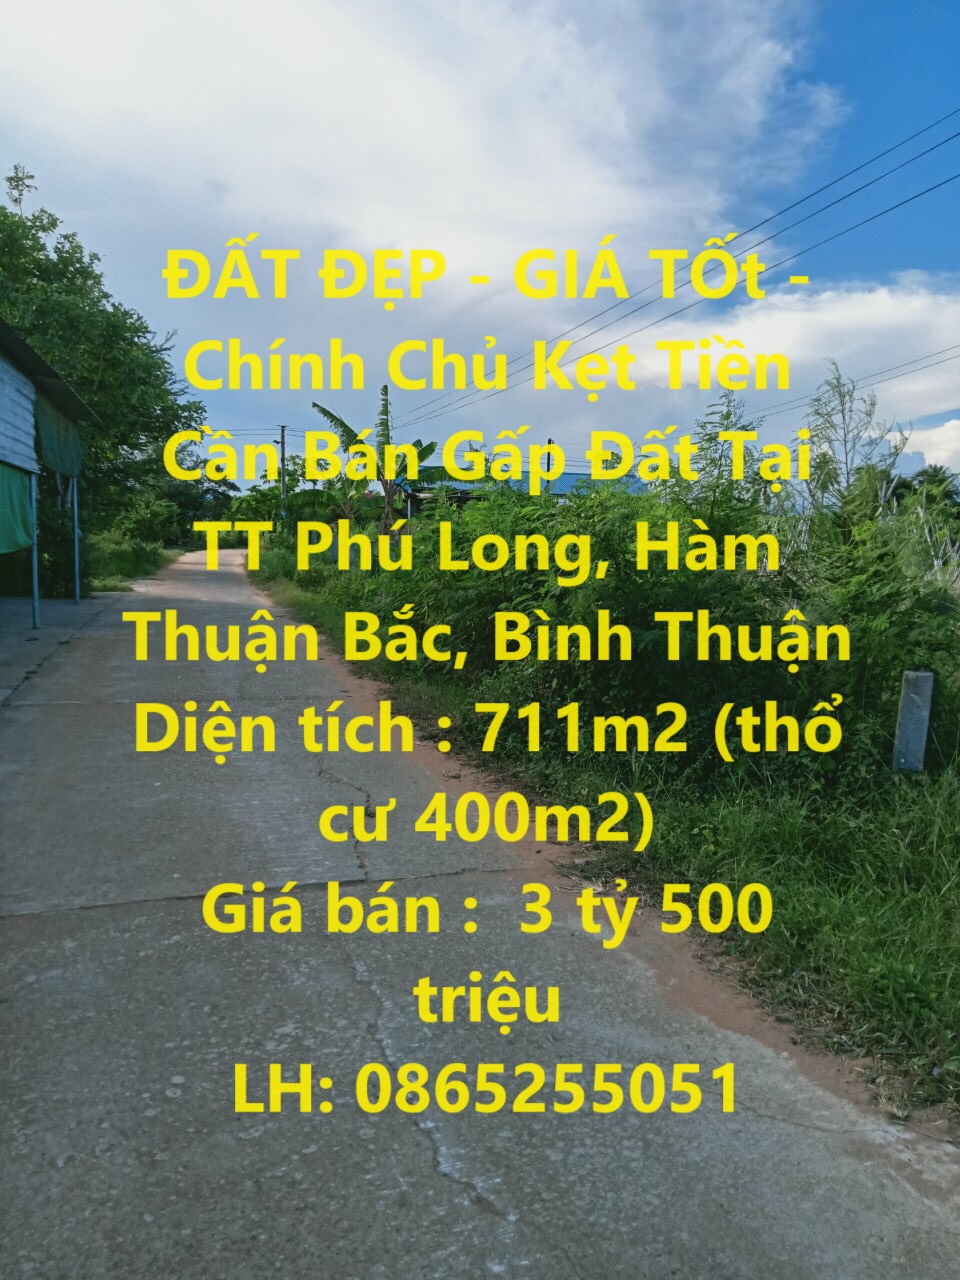 ĐẤT ĐẸP - GIÁ TỐt - Chính Chủ Kẹt Tiền Cần Bán Gấp Đất Tại TT Phú Long, Hàm Thuận Bắc, Bình Thuận - Ảnh chính